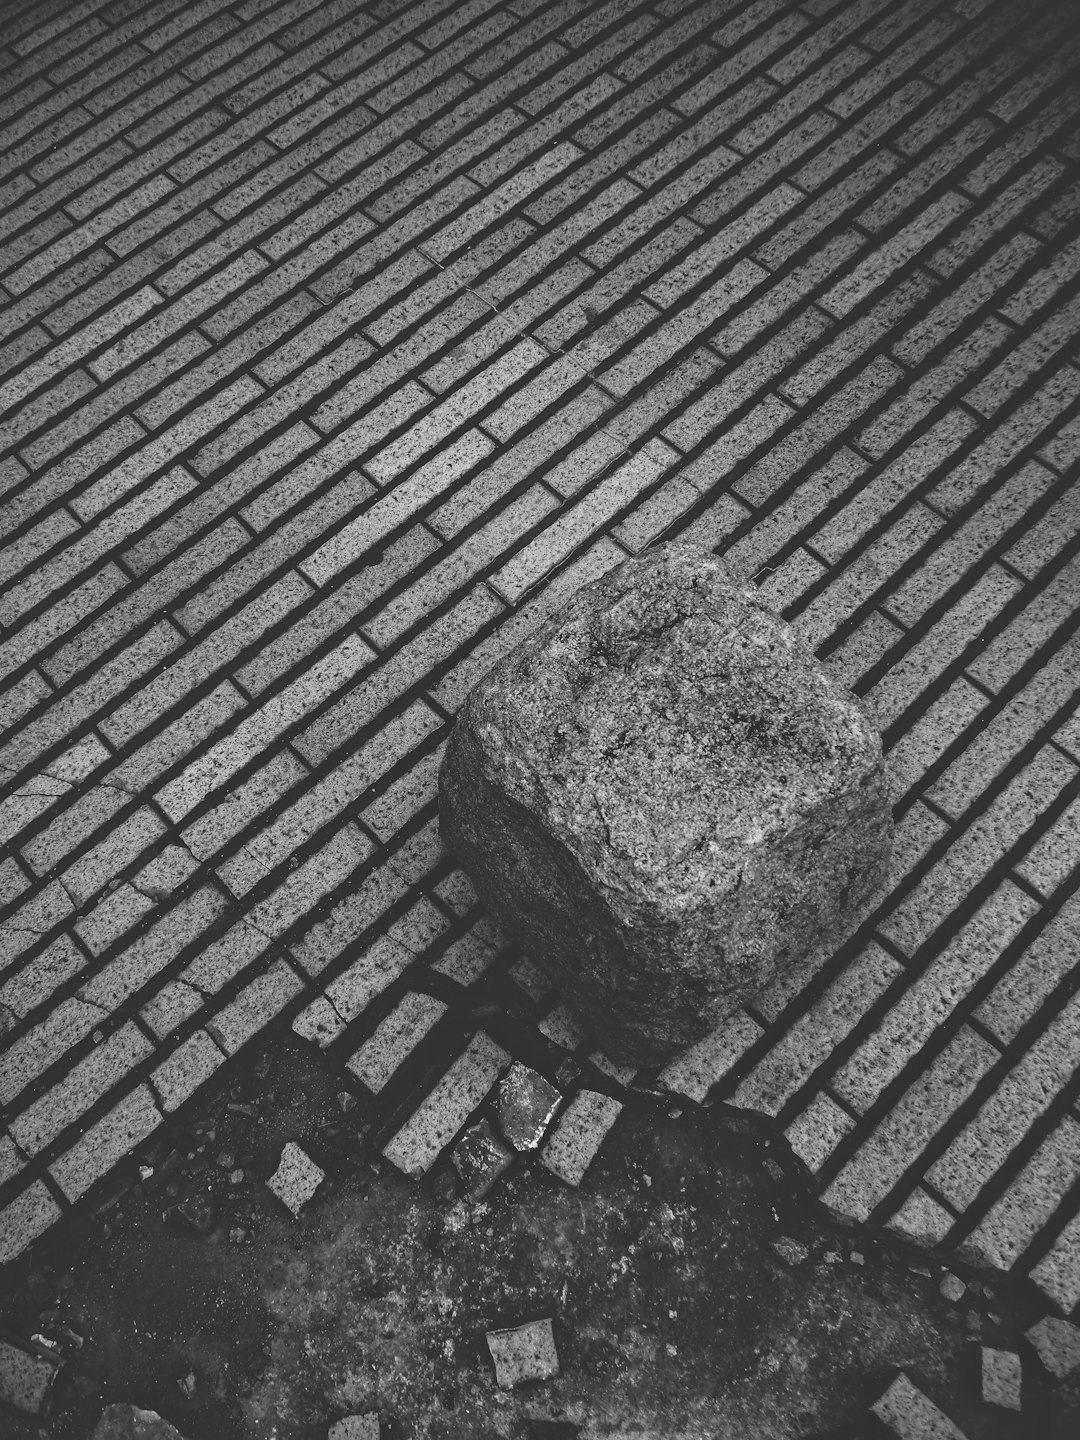 grayscale photo of rock on brick pavement